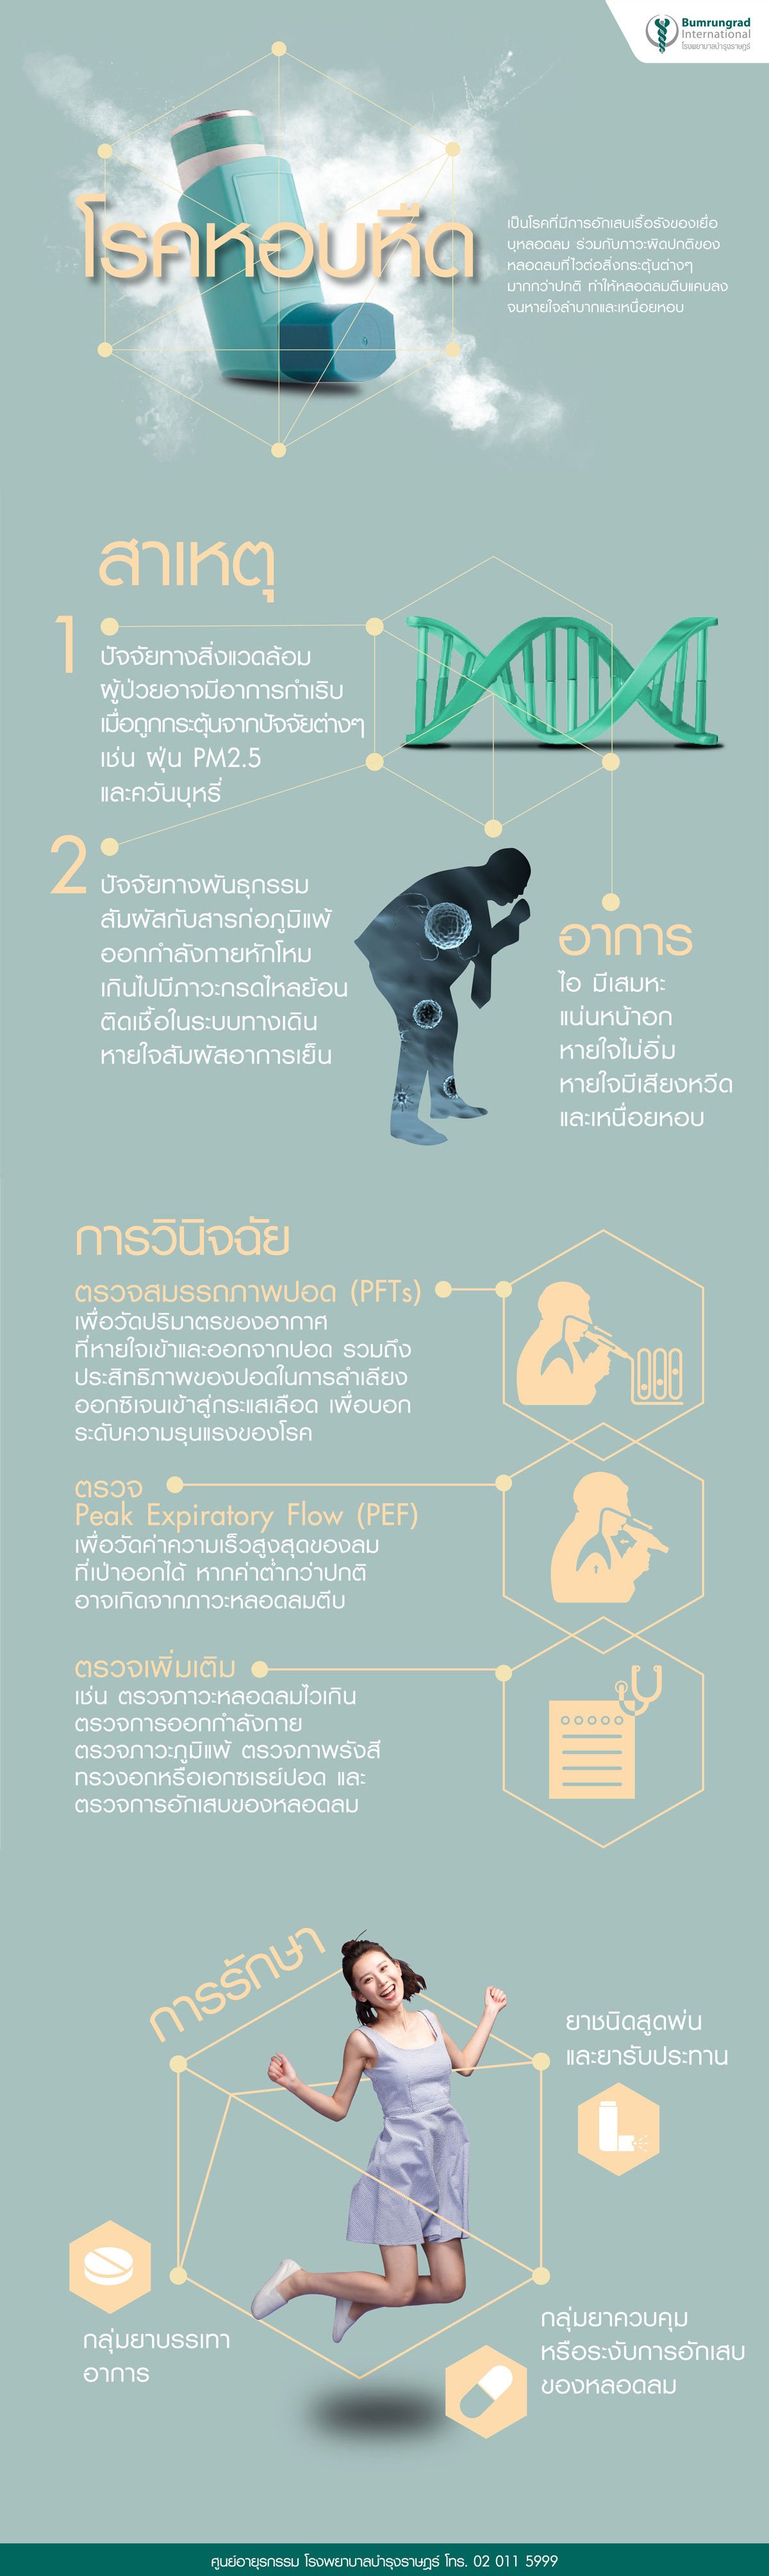 โรคหอบหืด อาการ สาเหตุ รักษา การป้องกัน ศูนย์ภูมิแพ้ infographic